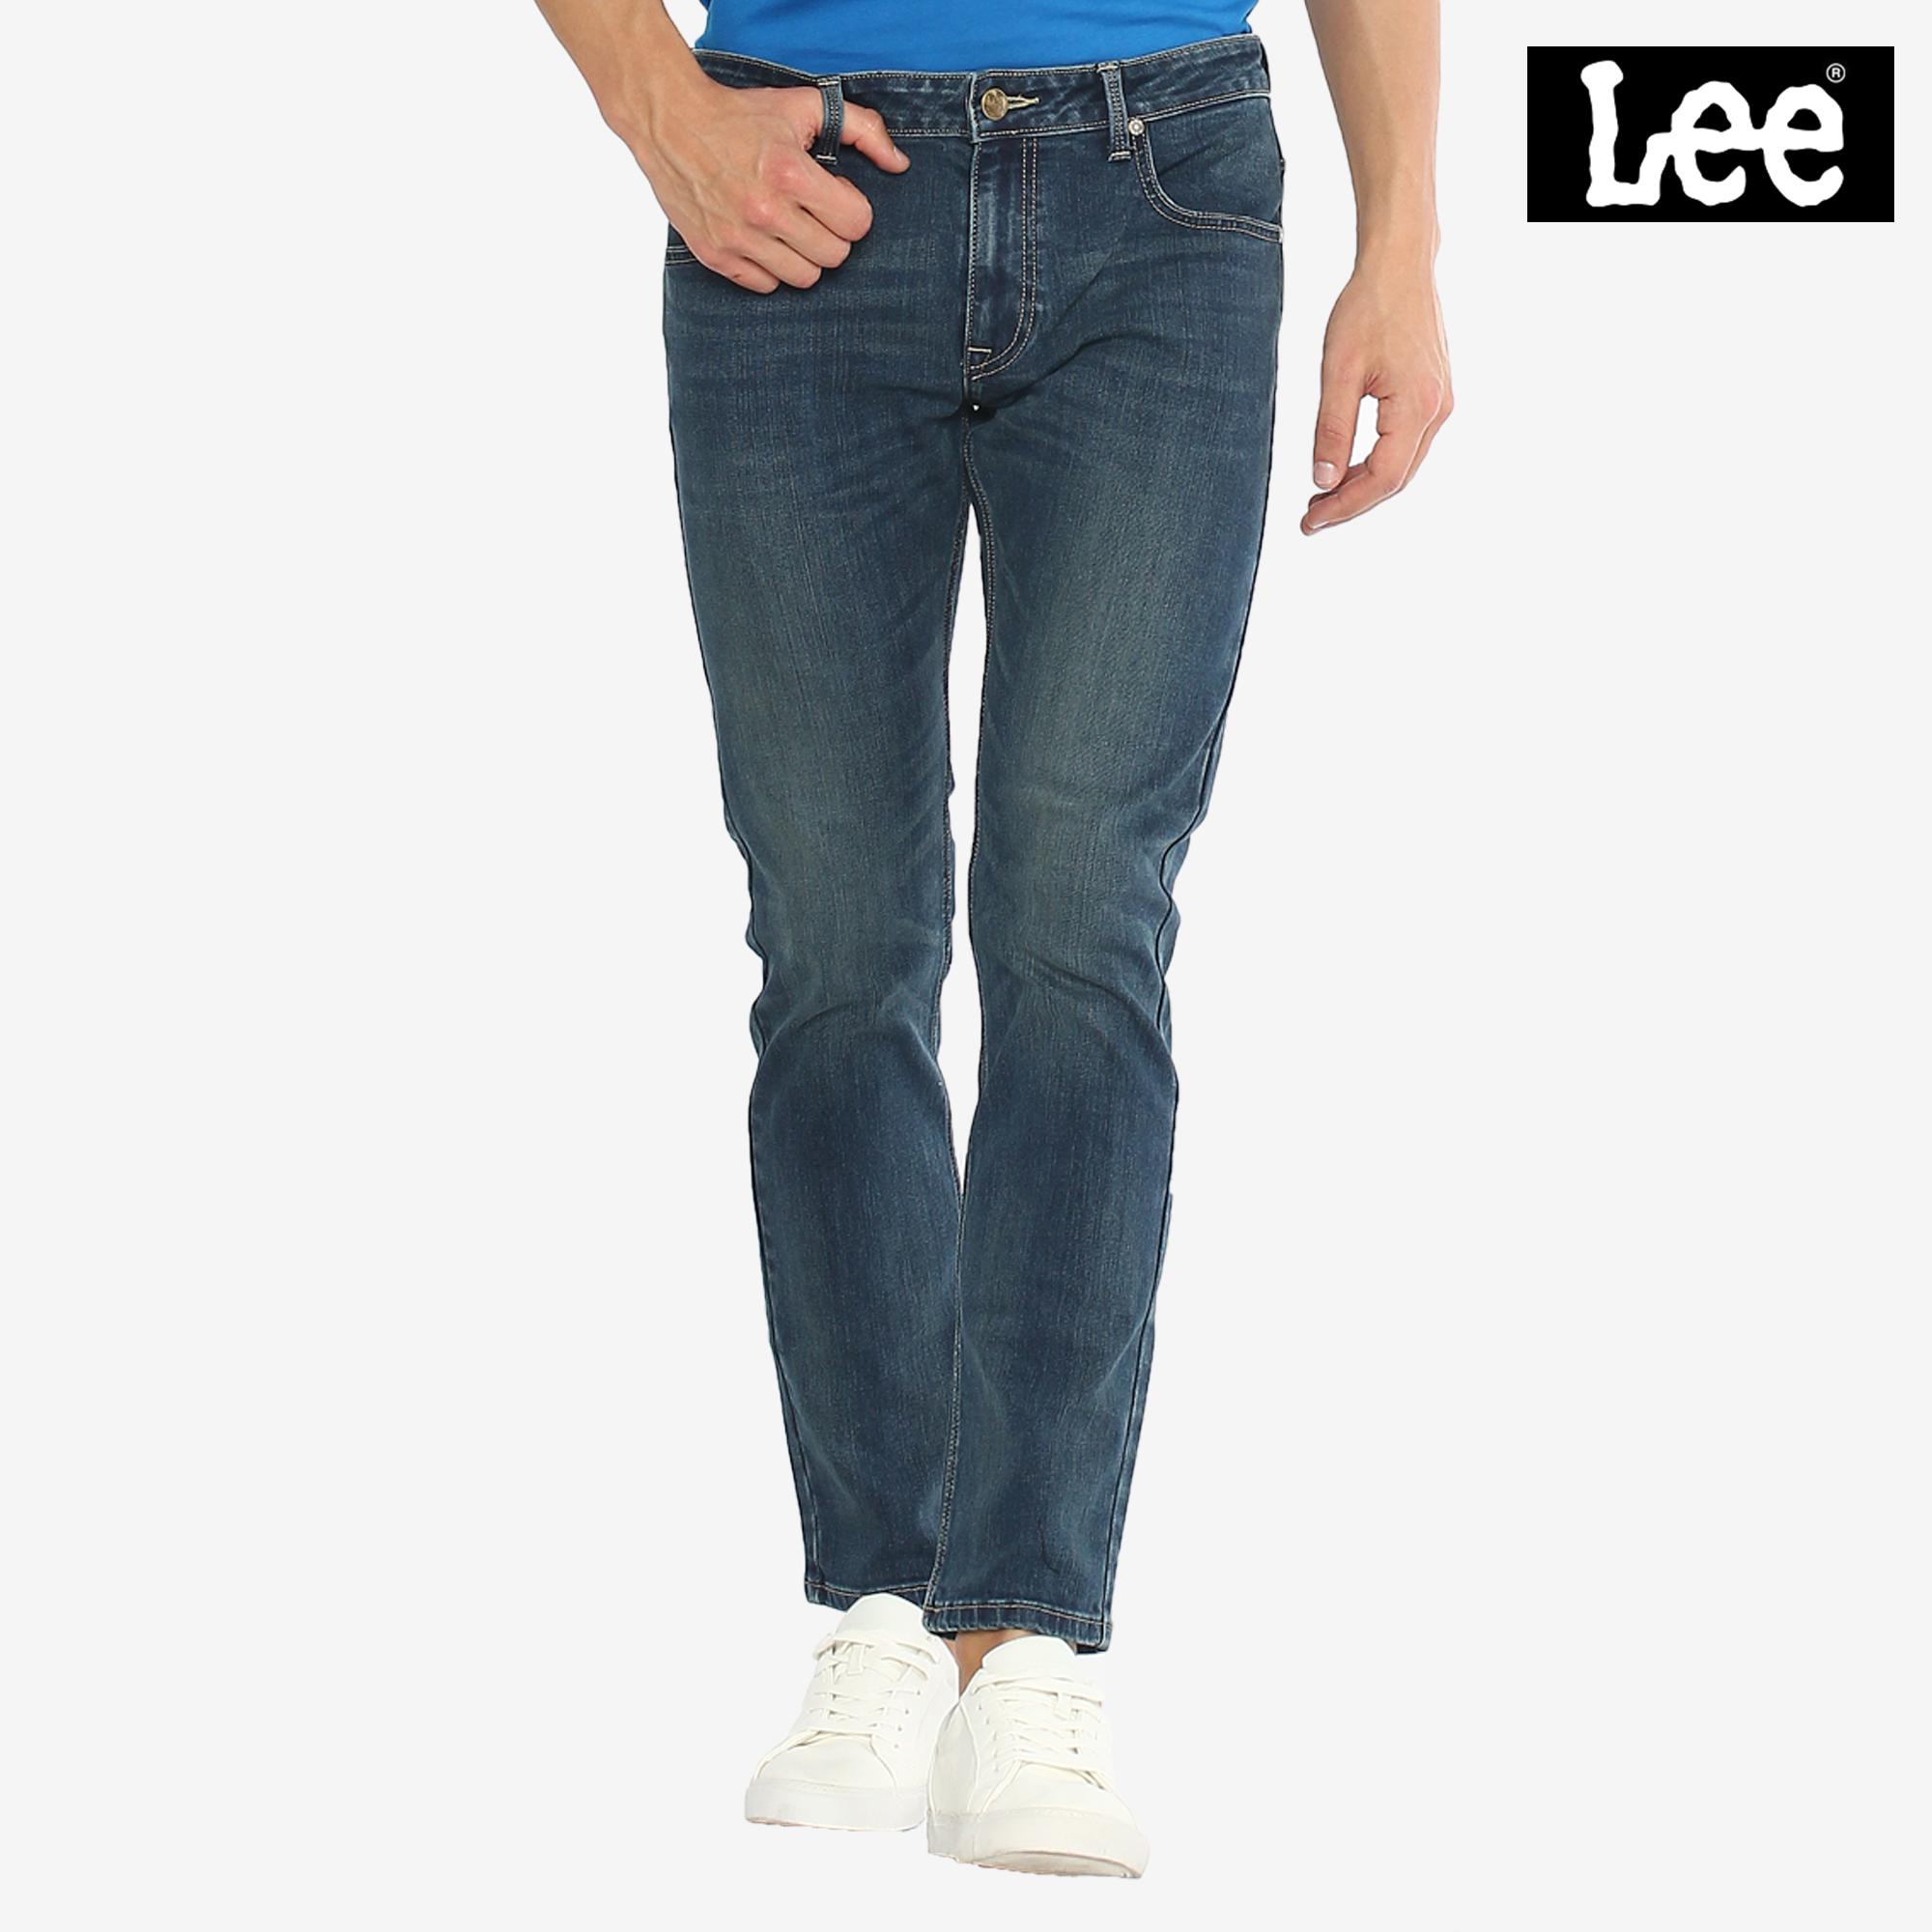 buy lee jeans